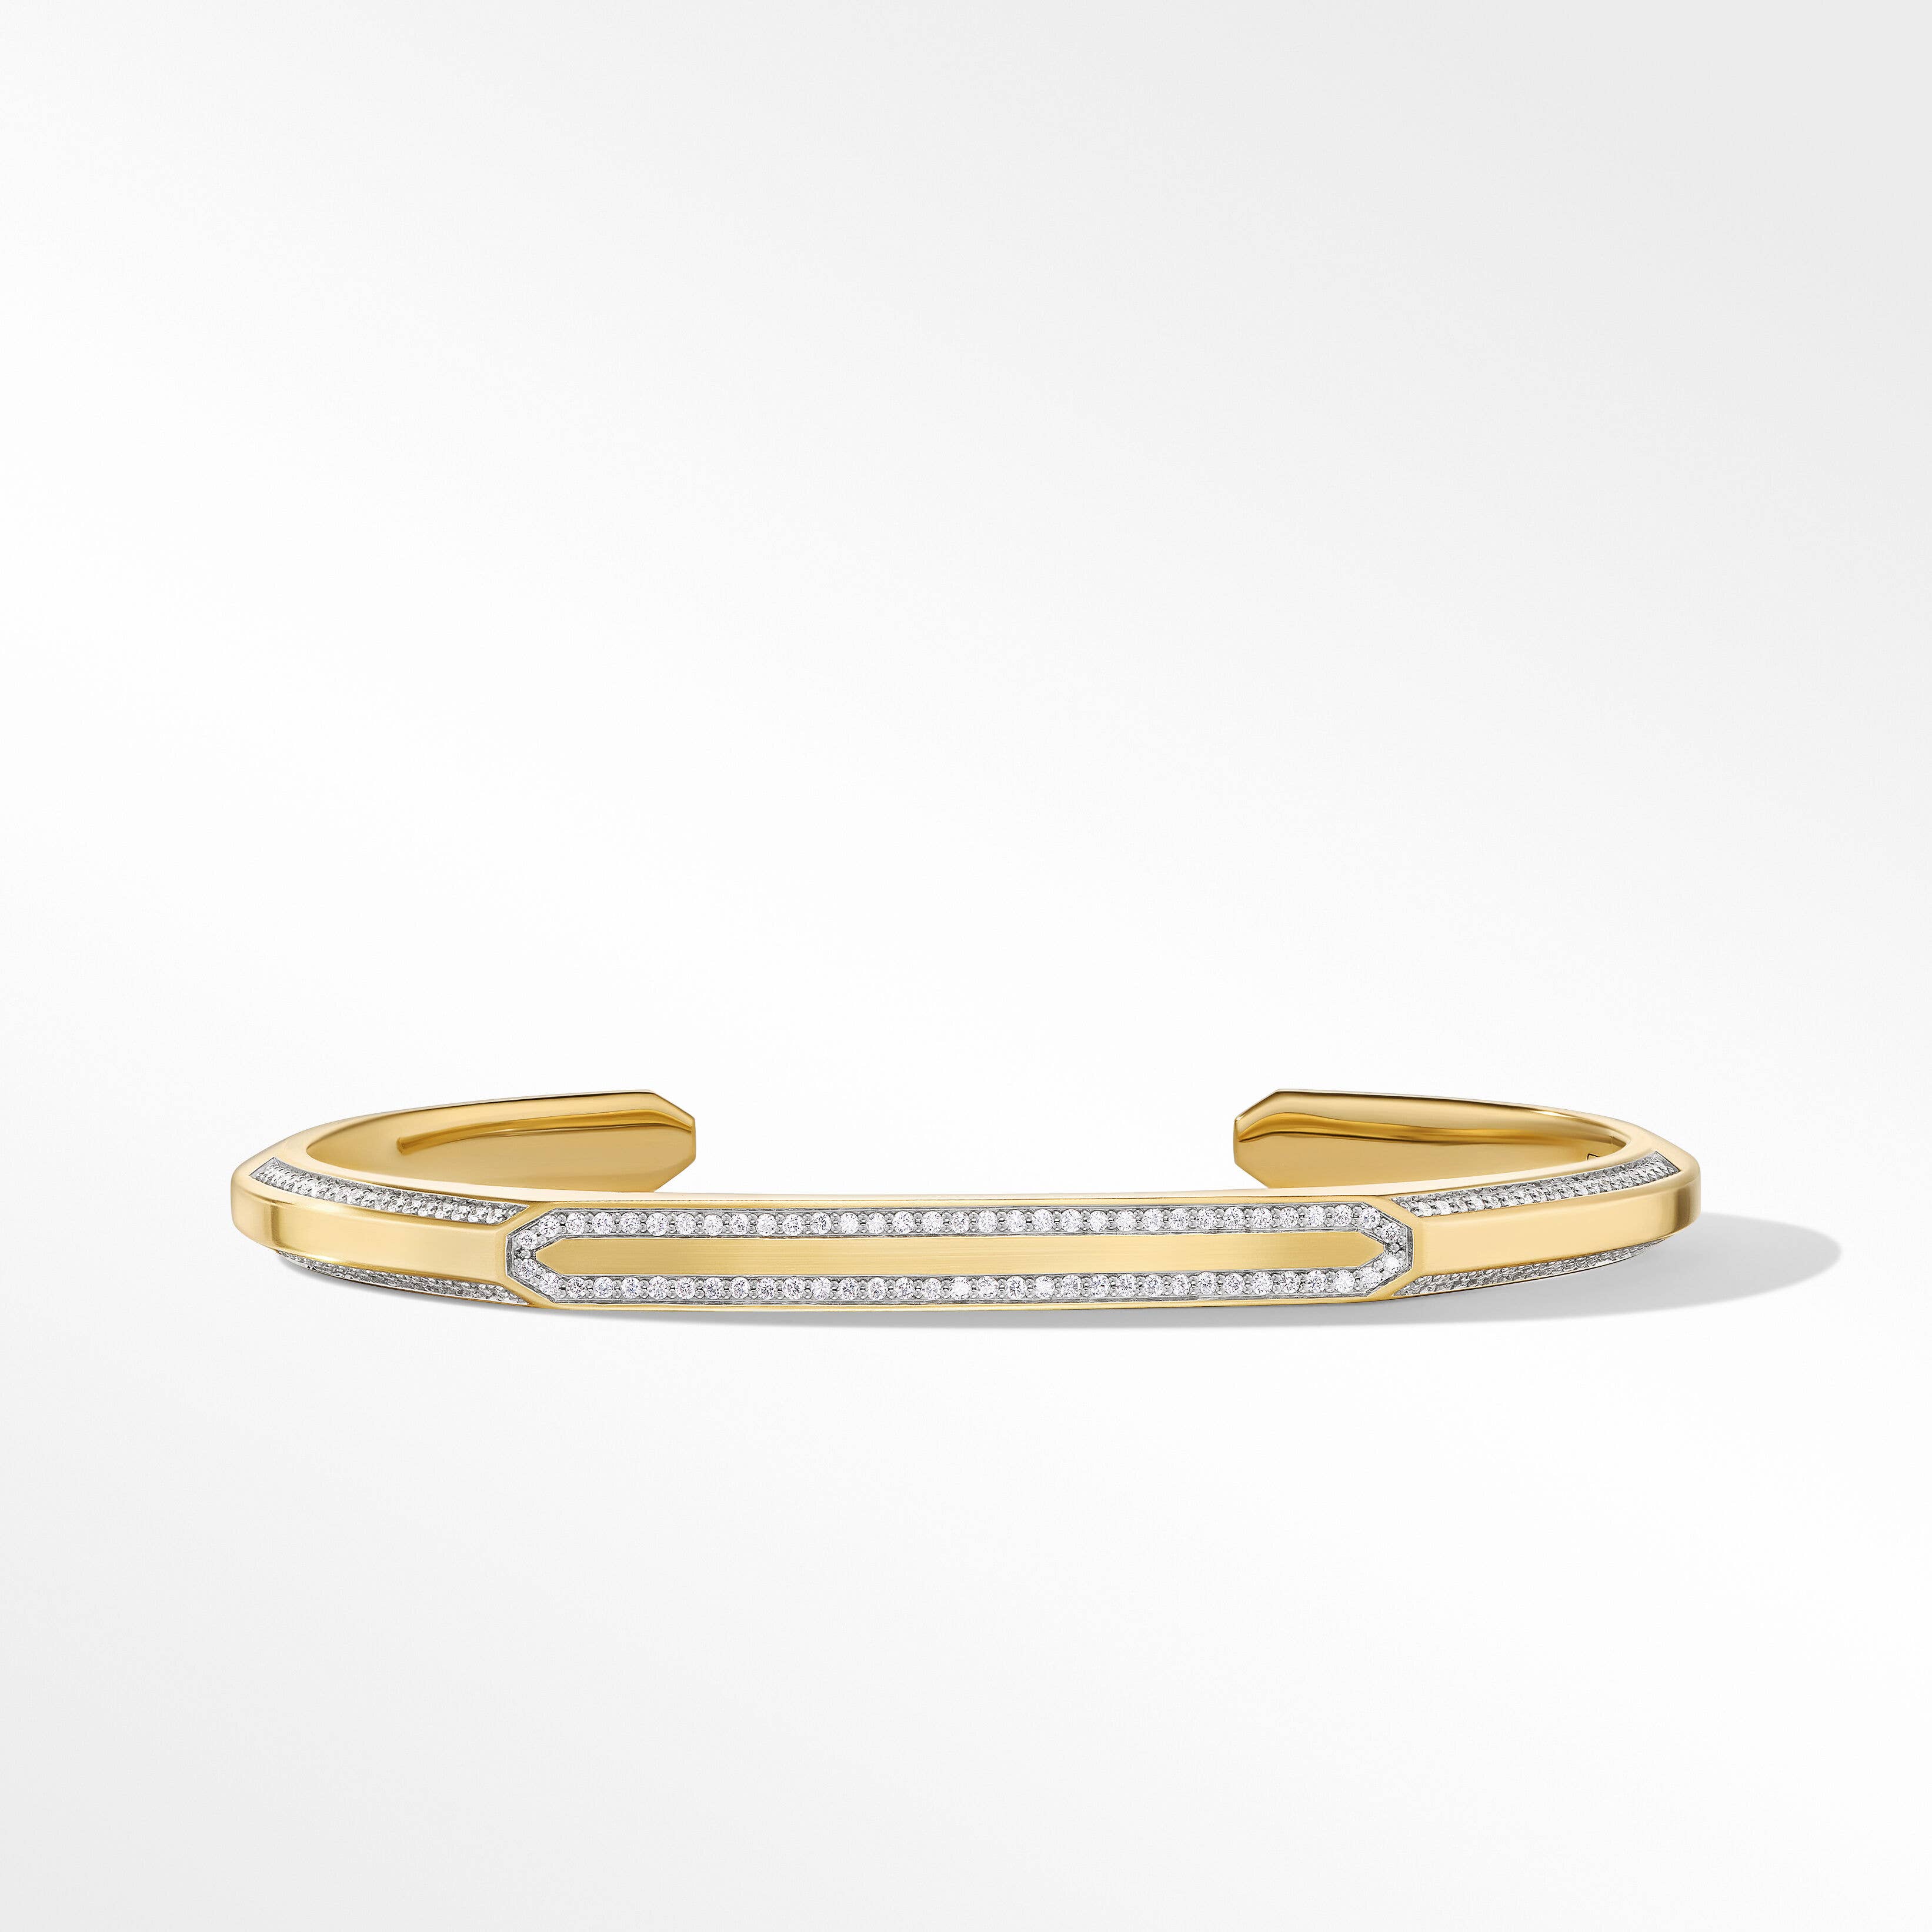 Streamline® Cuff Bracelet in 18K Yellow Gold with Pavé Diamonds